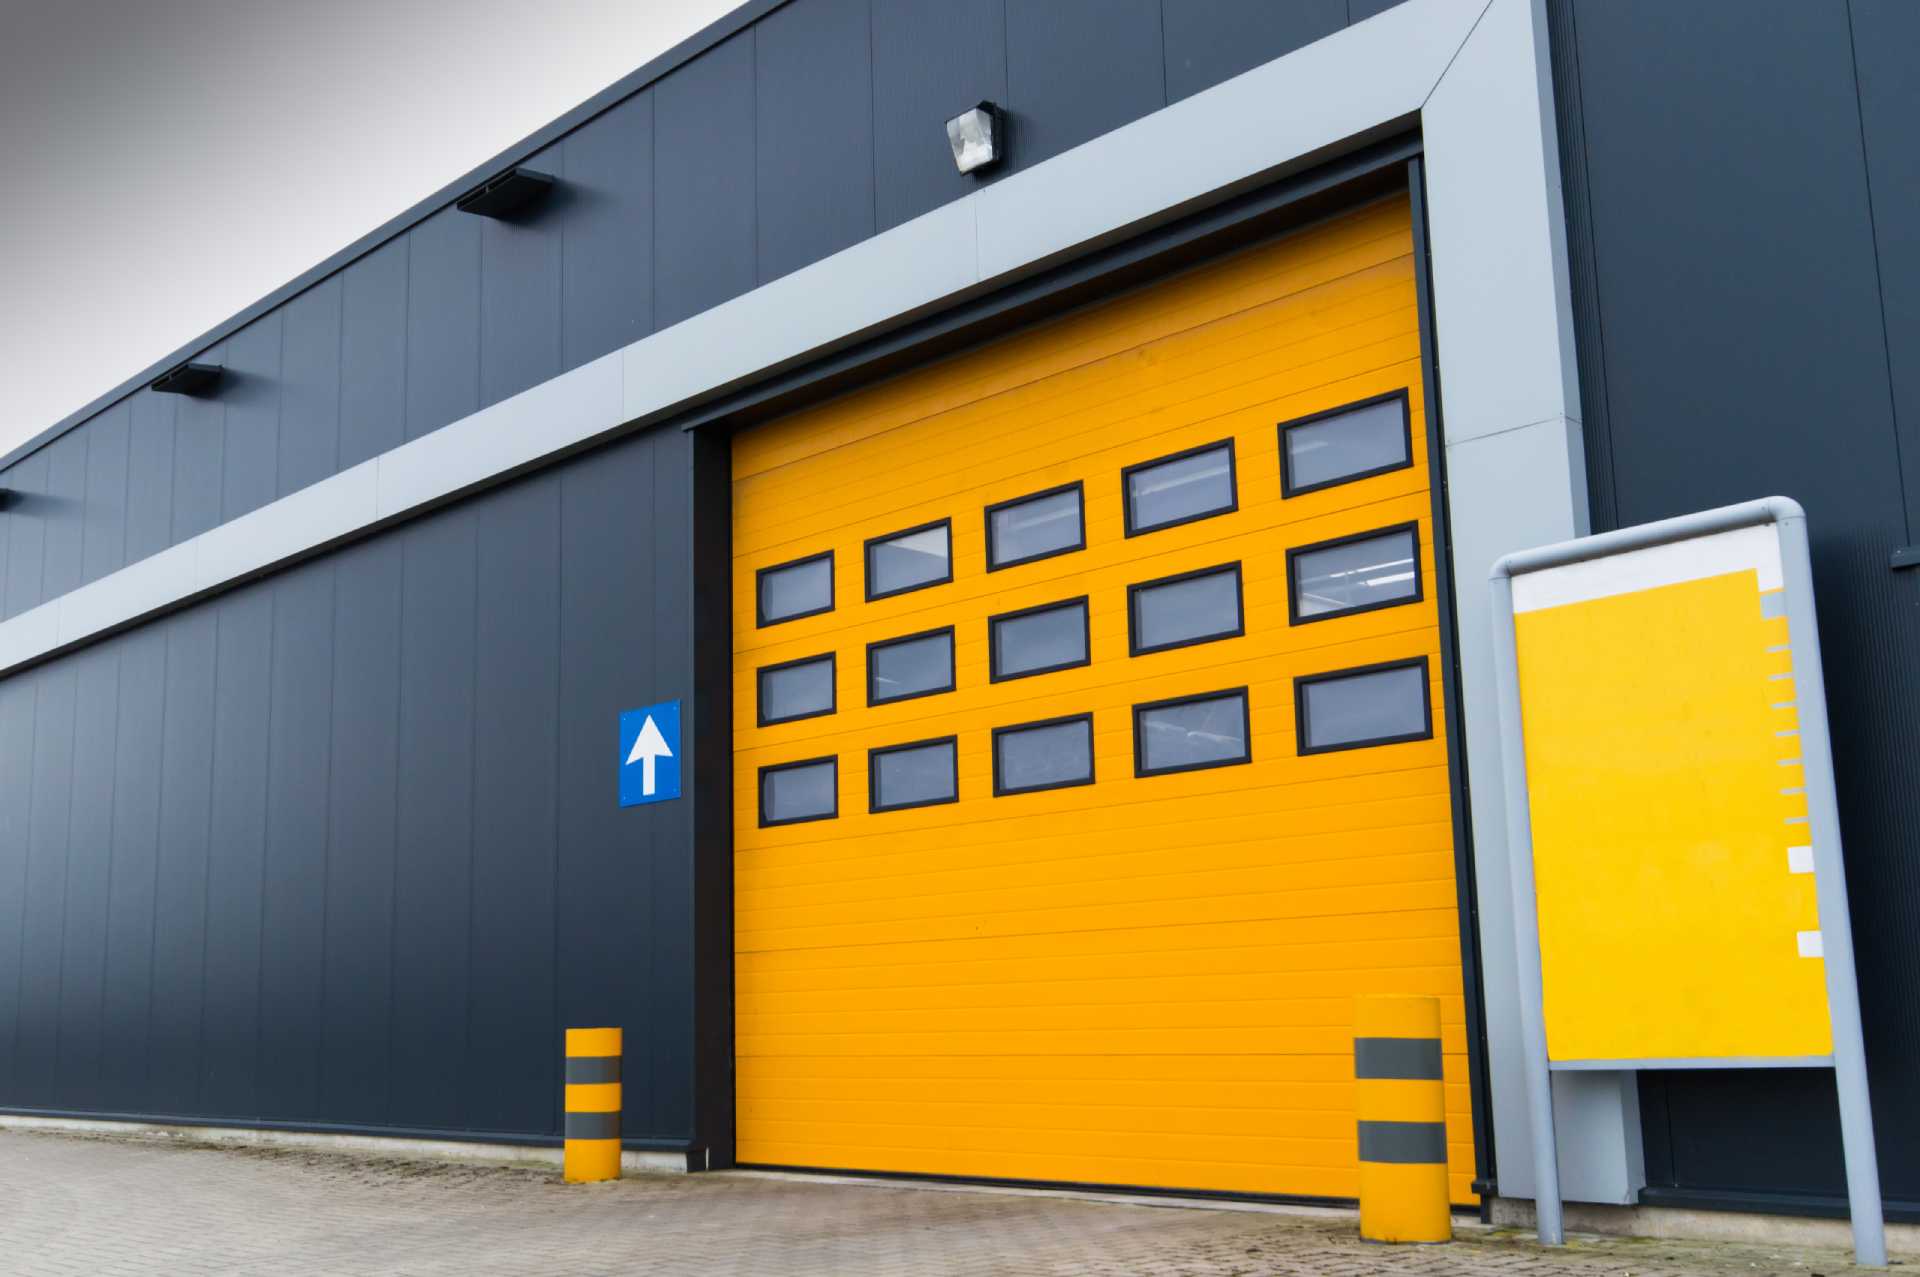 Overhead Door Company of Maricopa & Pinal County installs steel garage doors